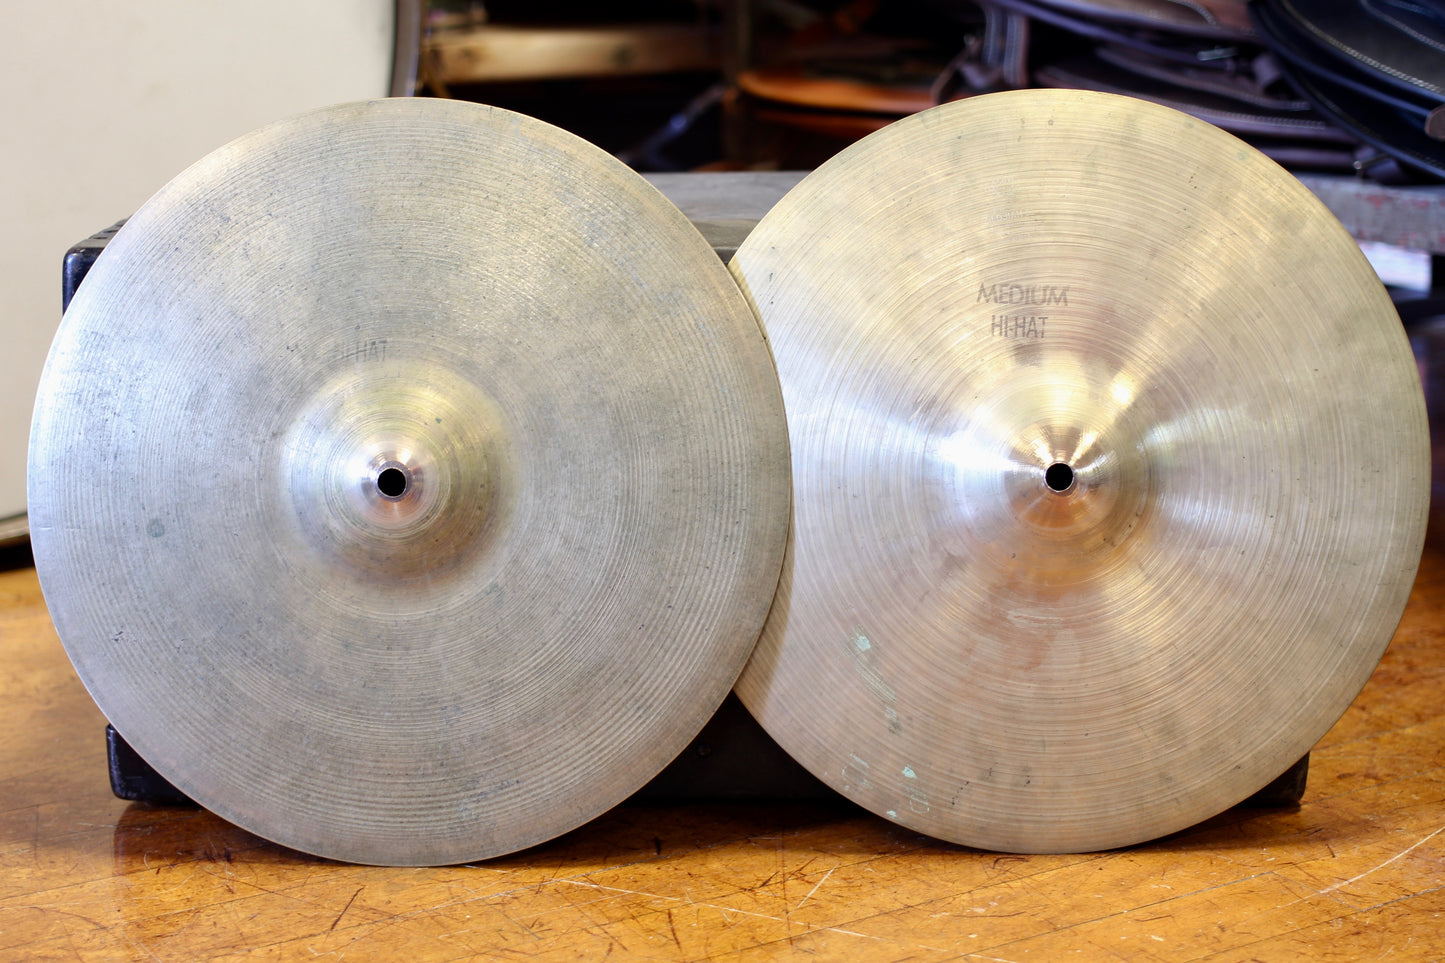 1970’s A Zildjian 14” Medium Hi-Hat Cymbals 725/755g